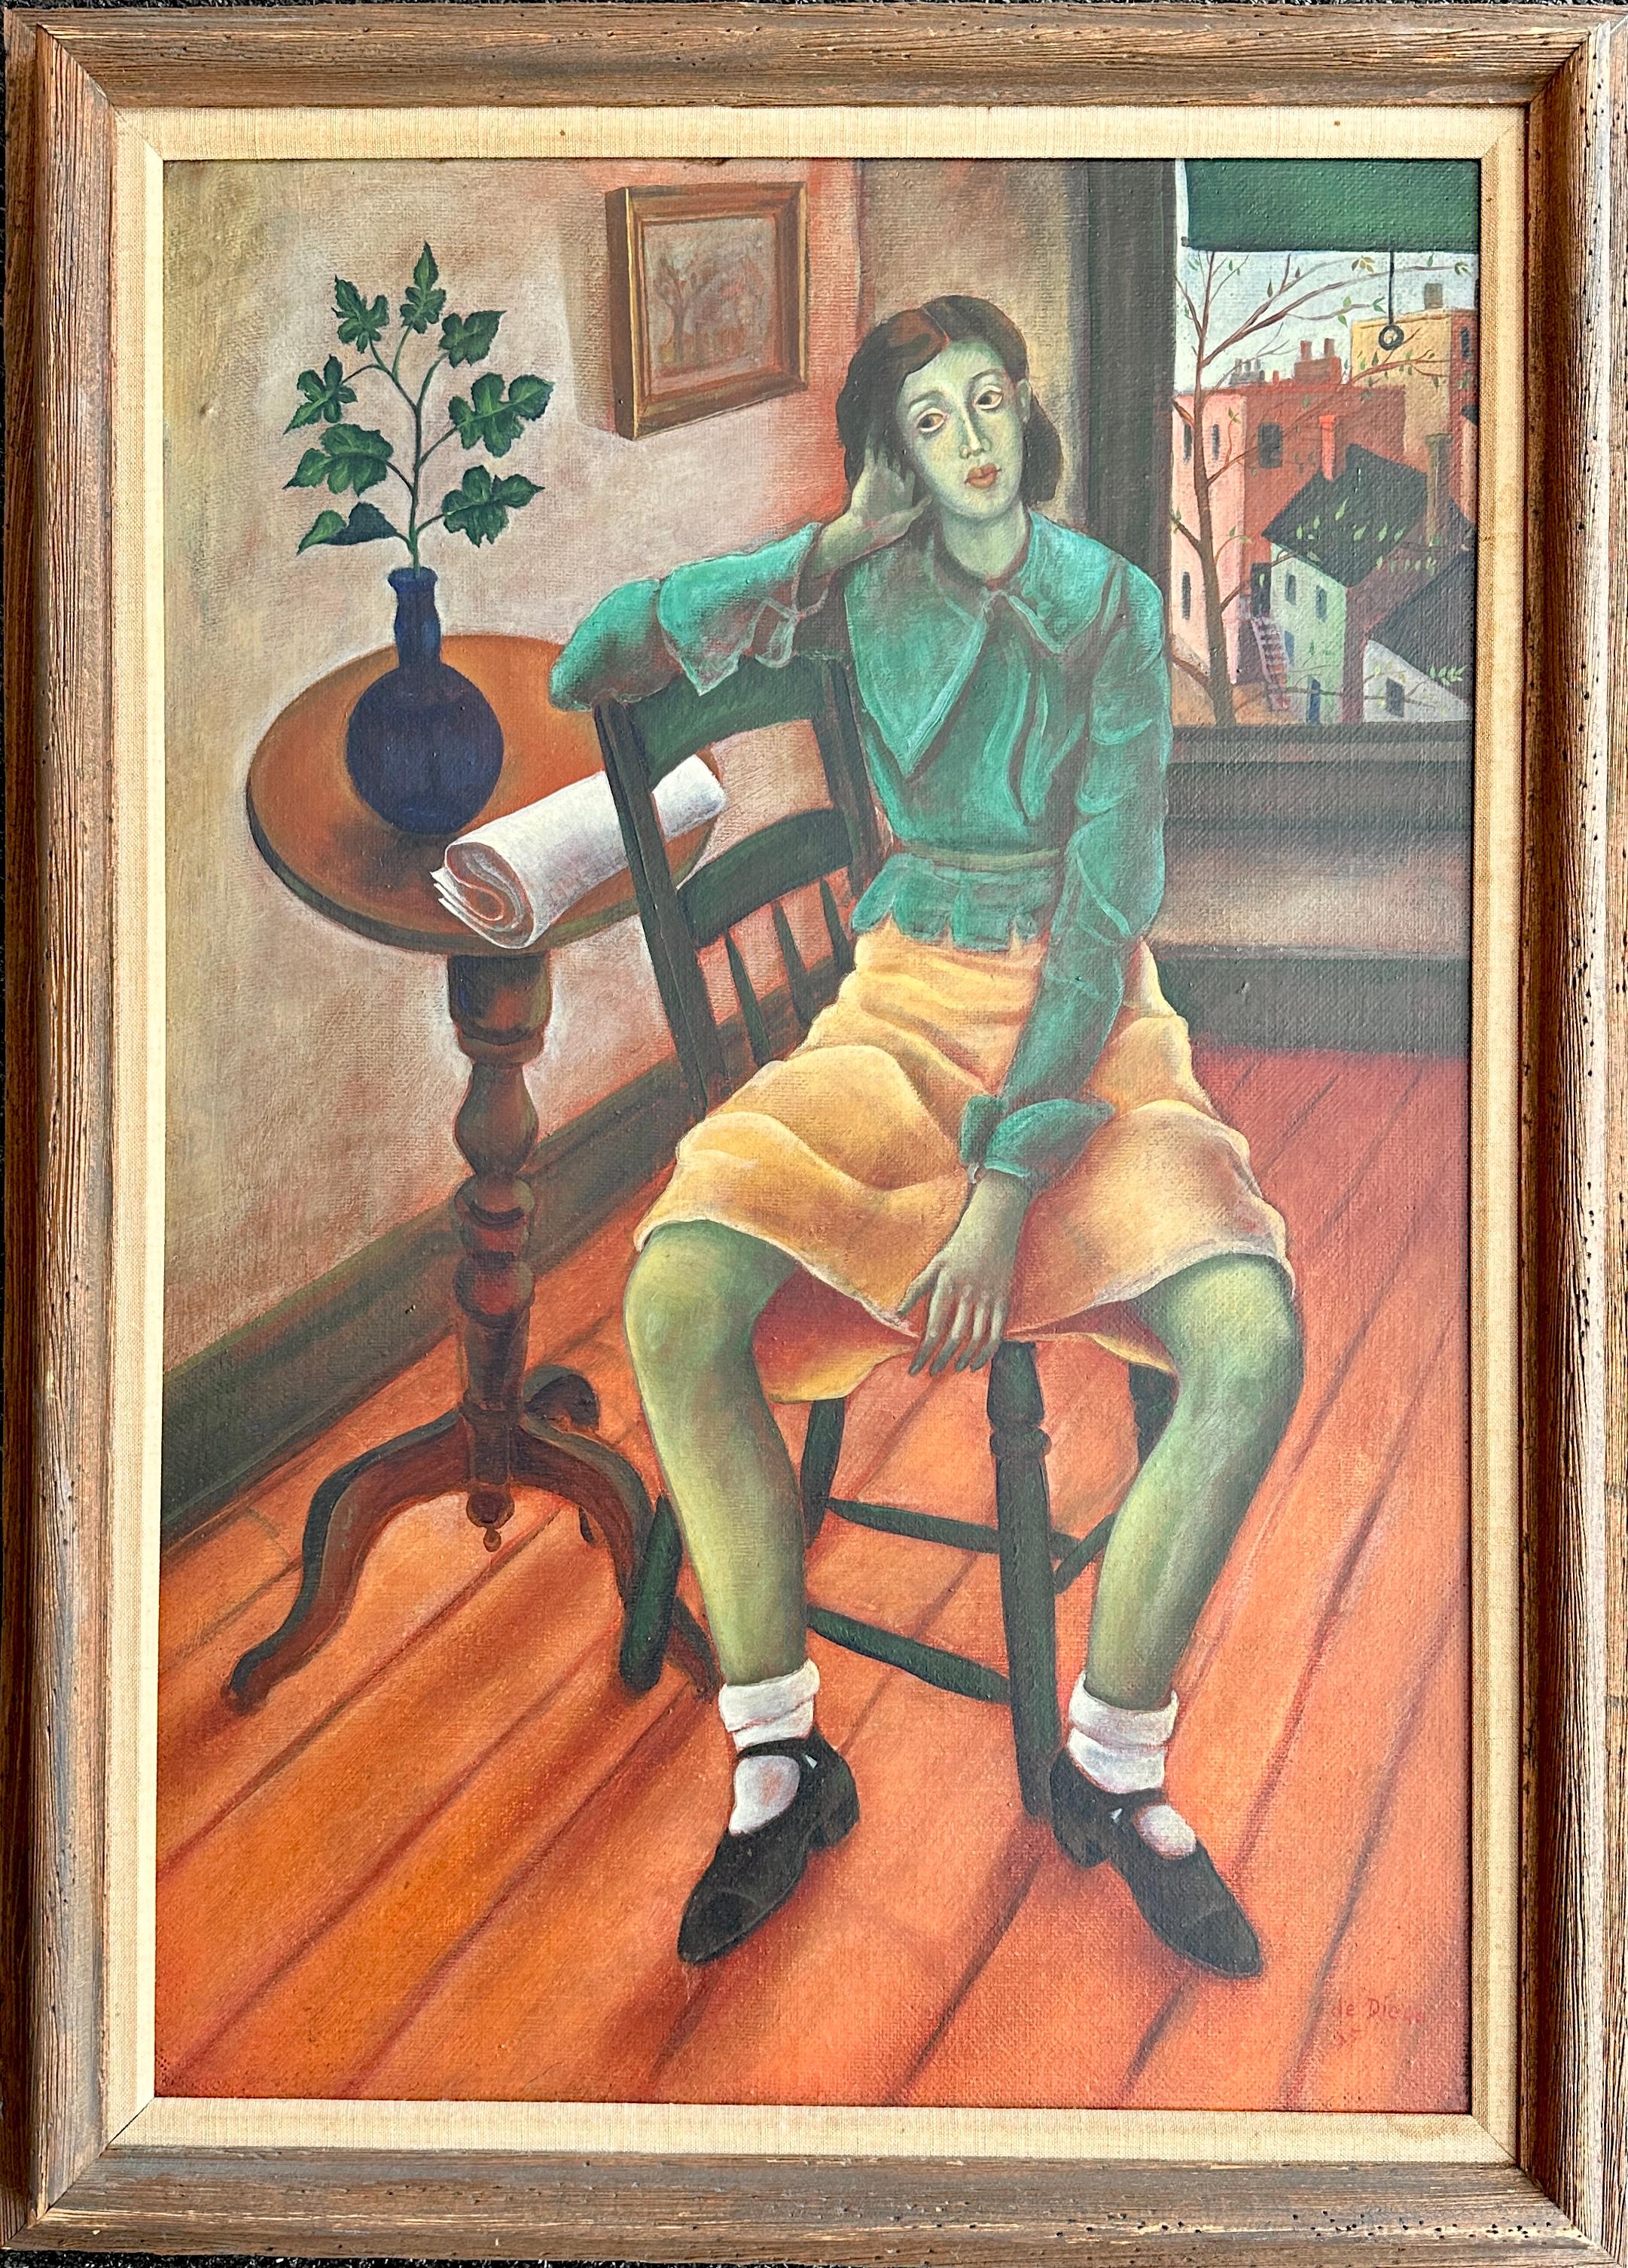 Jeune fille dans un intérieur - Peinture à l'huile de Julio De Diego - Painting de Julio de Diego